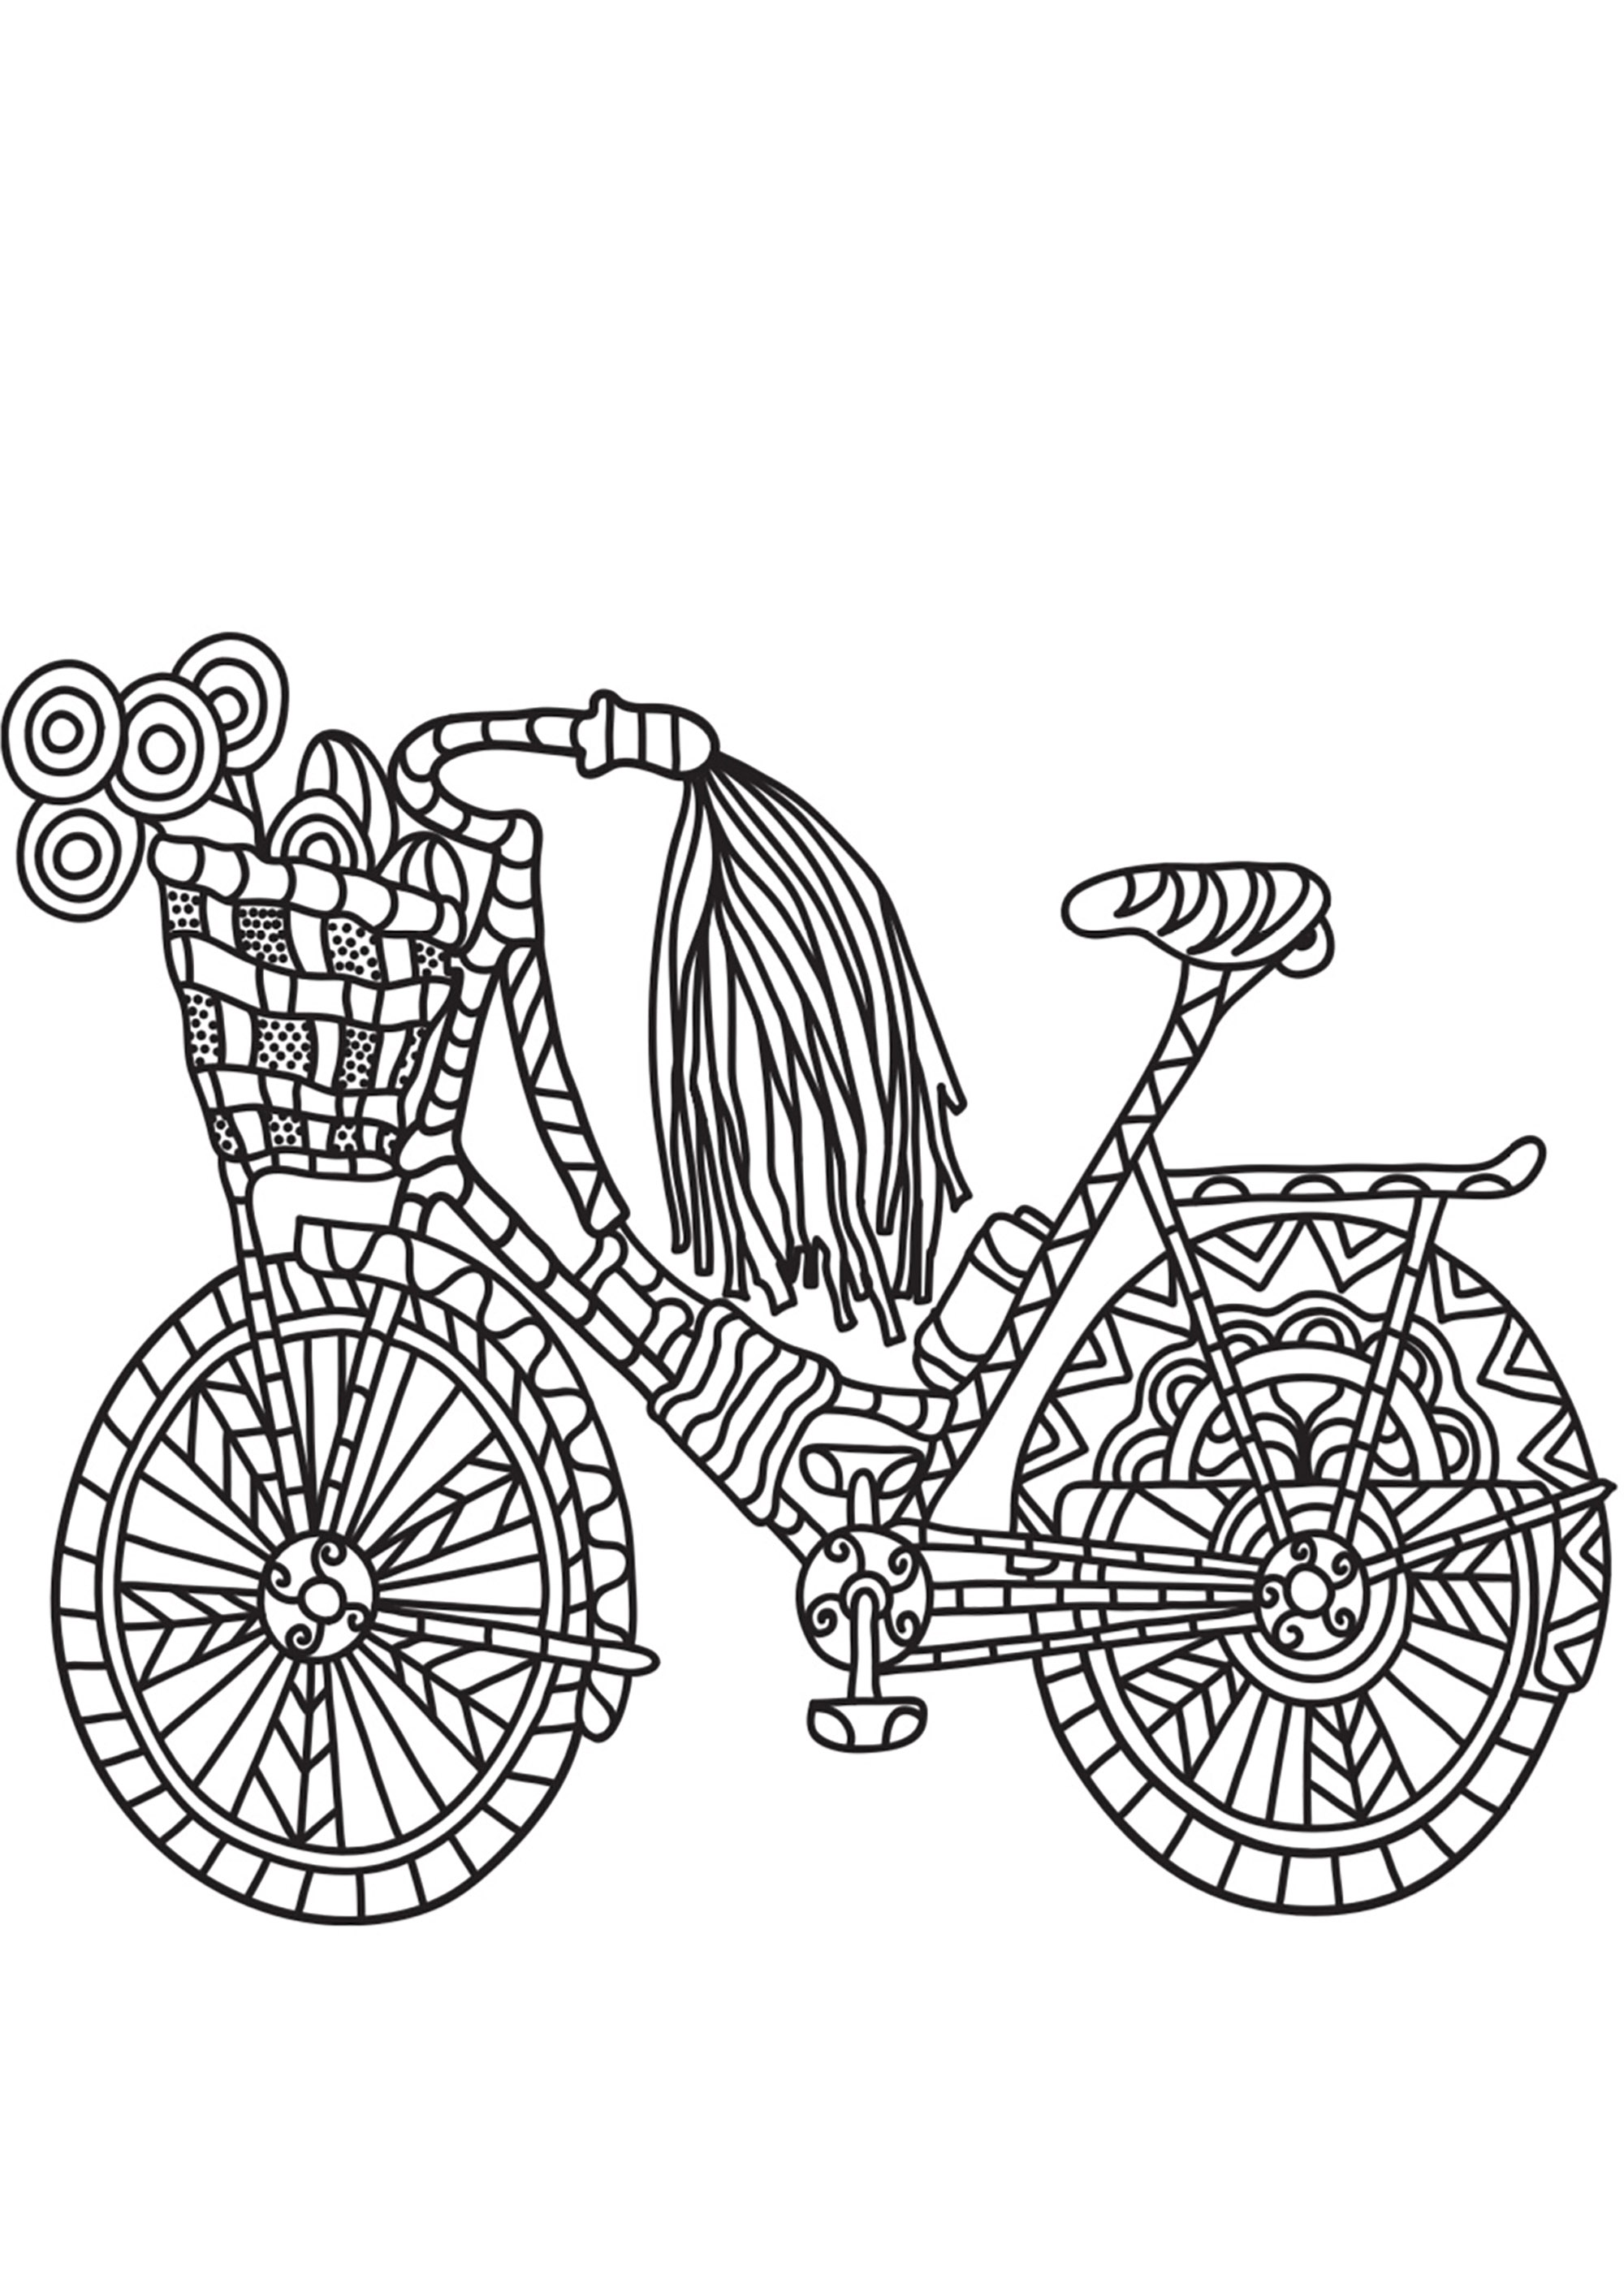 Design simples de bicicleta com motivos simples. Um livro para colorir que o leva de volta à infância